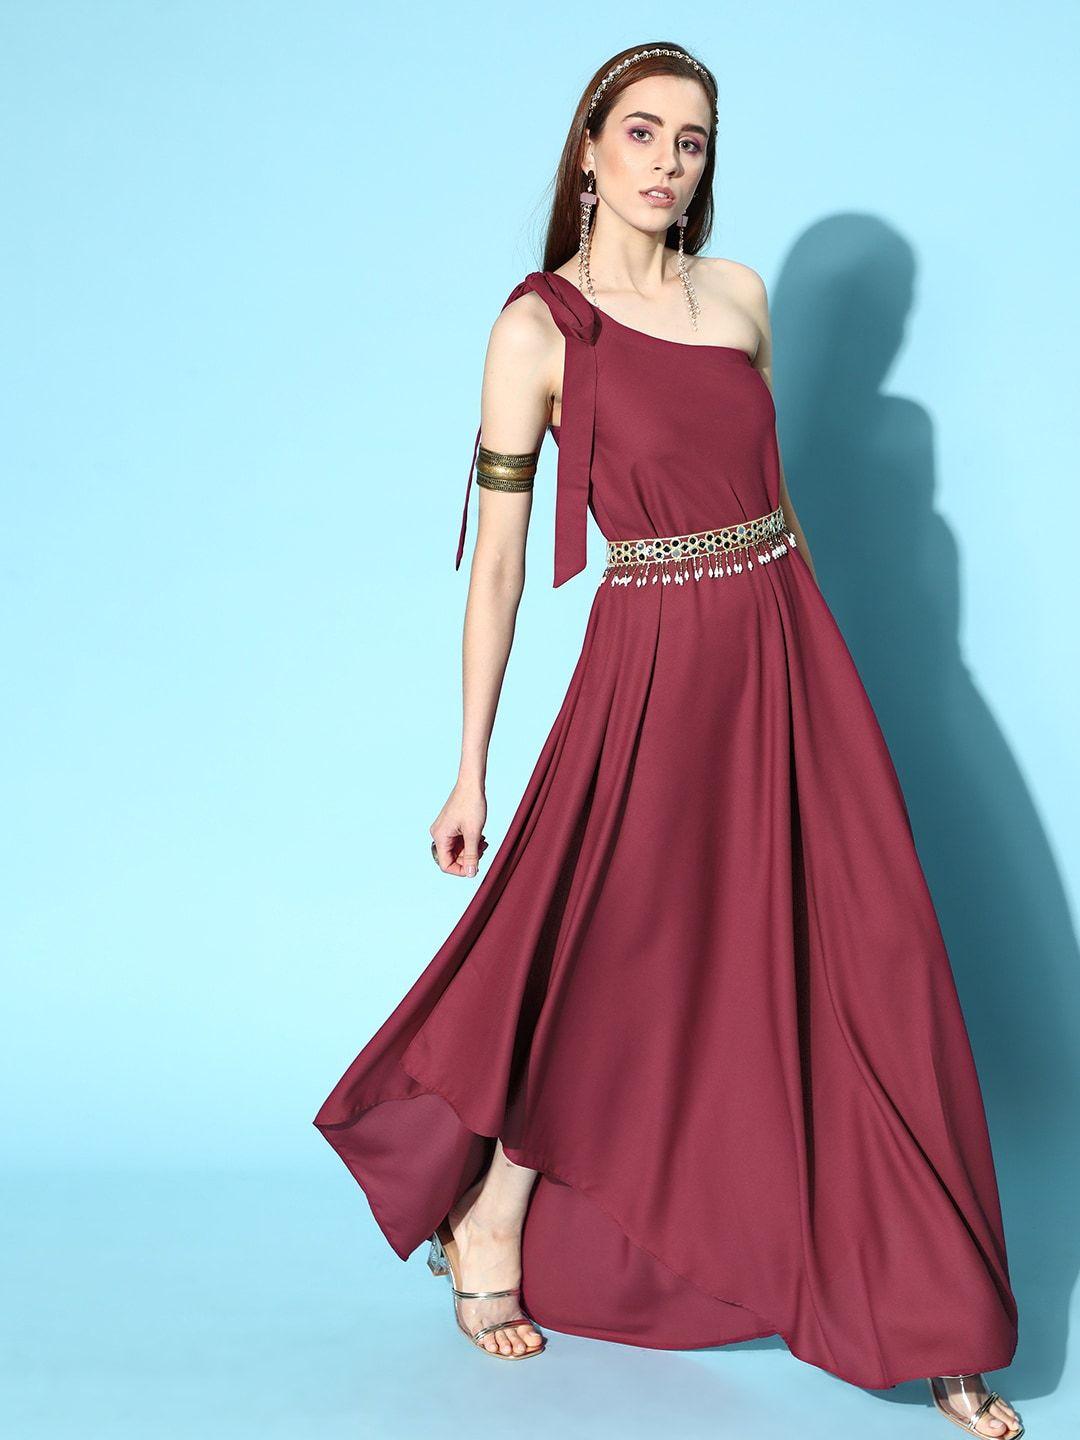 inddus women charming maroon solid one-shoulder dress with embellished belt